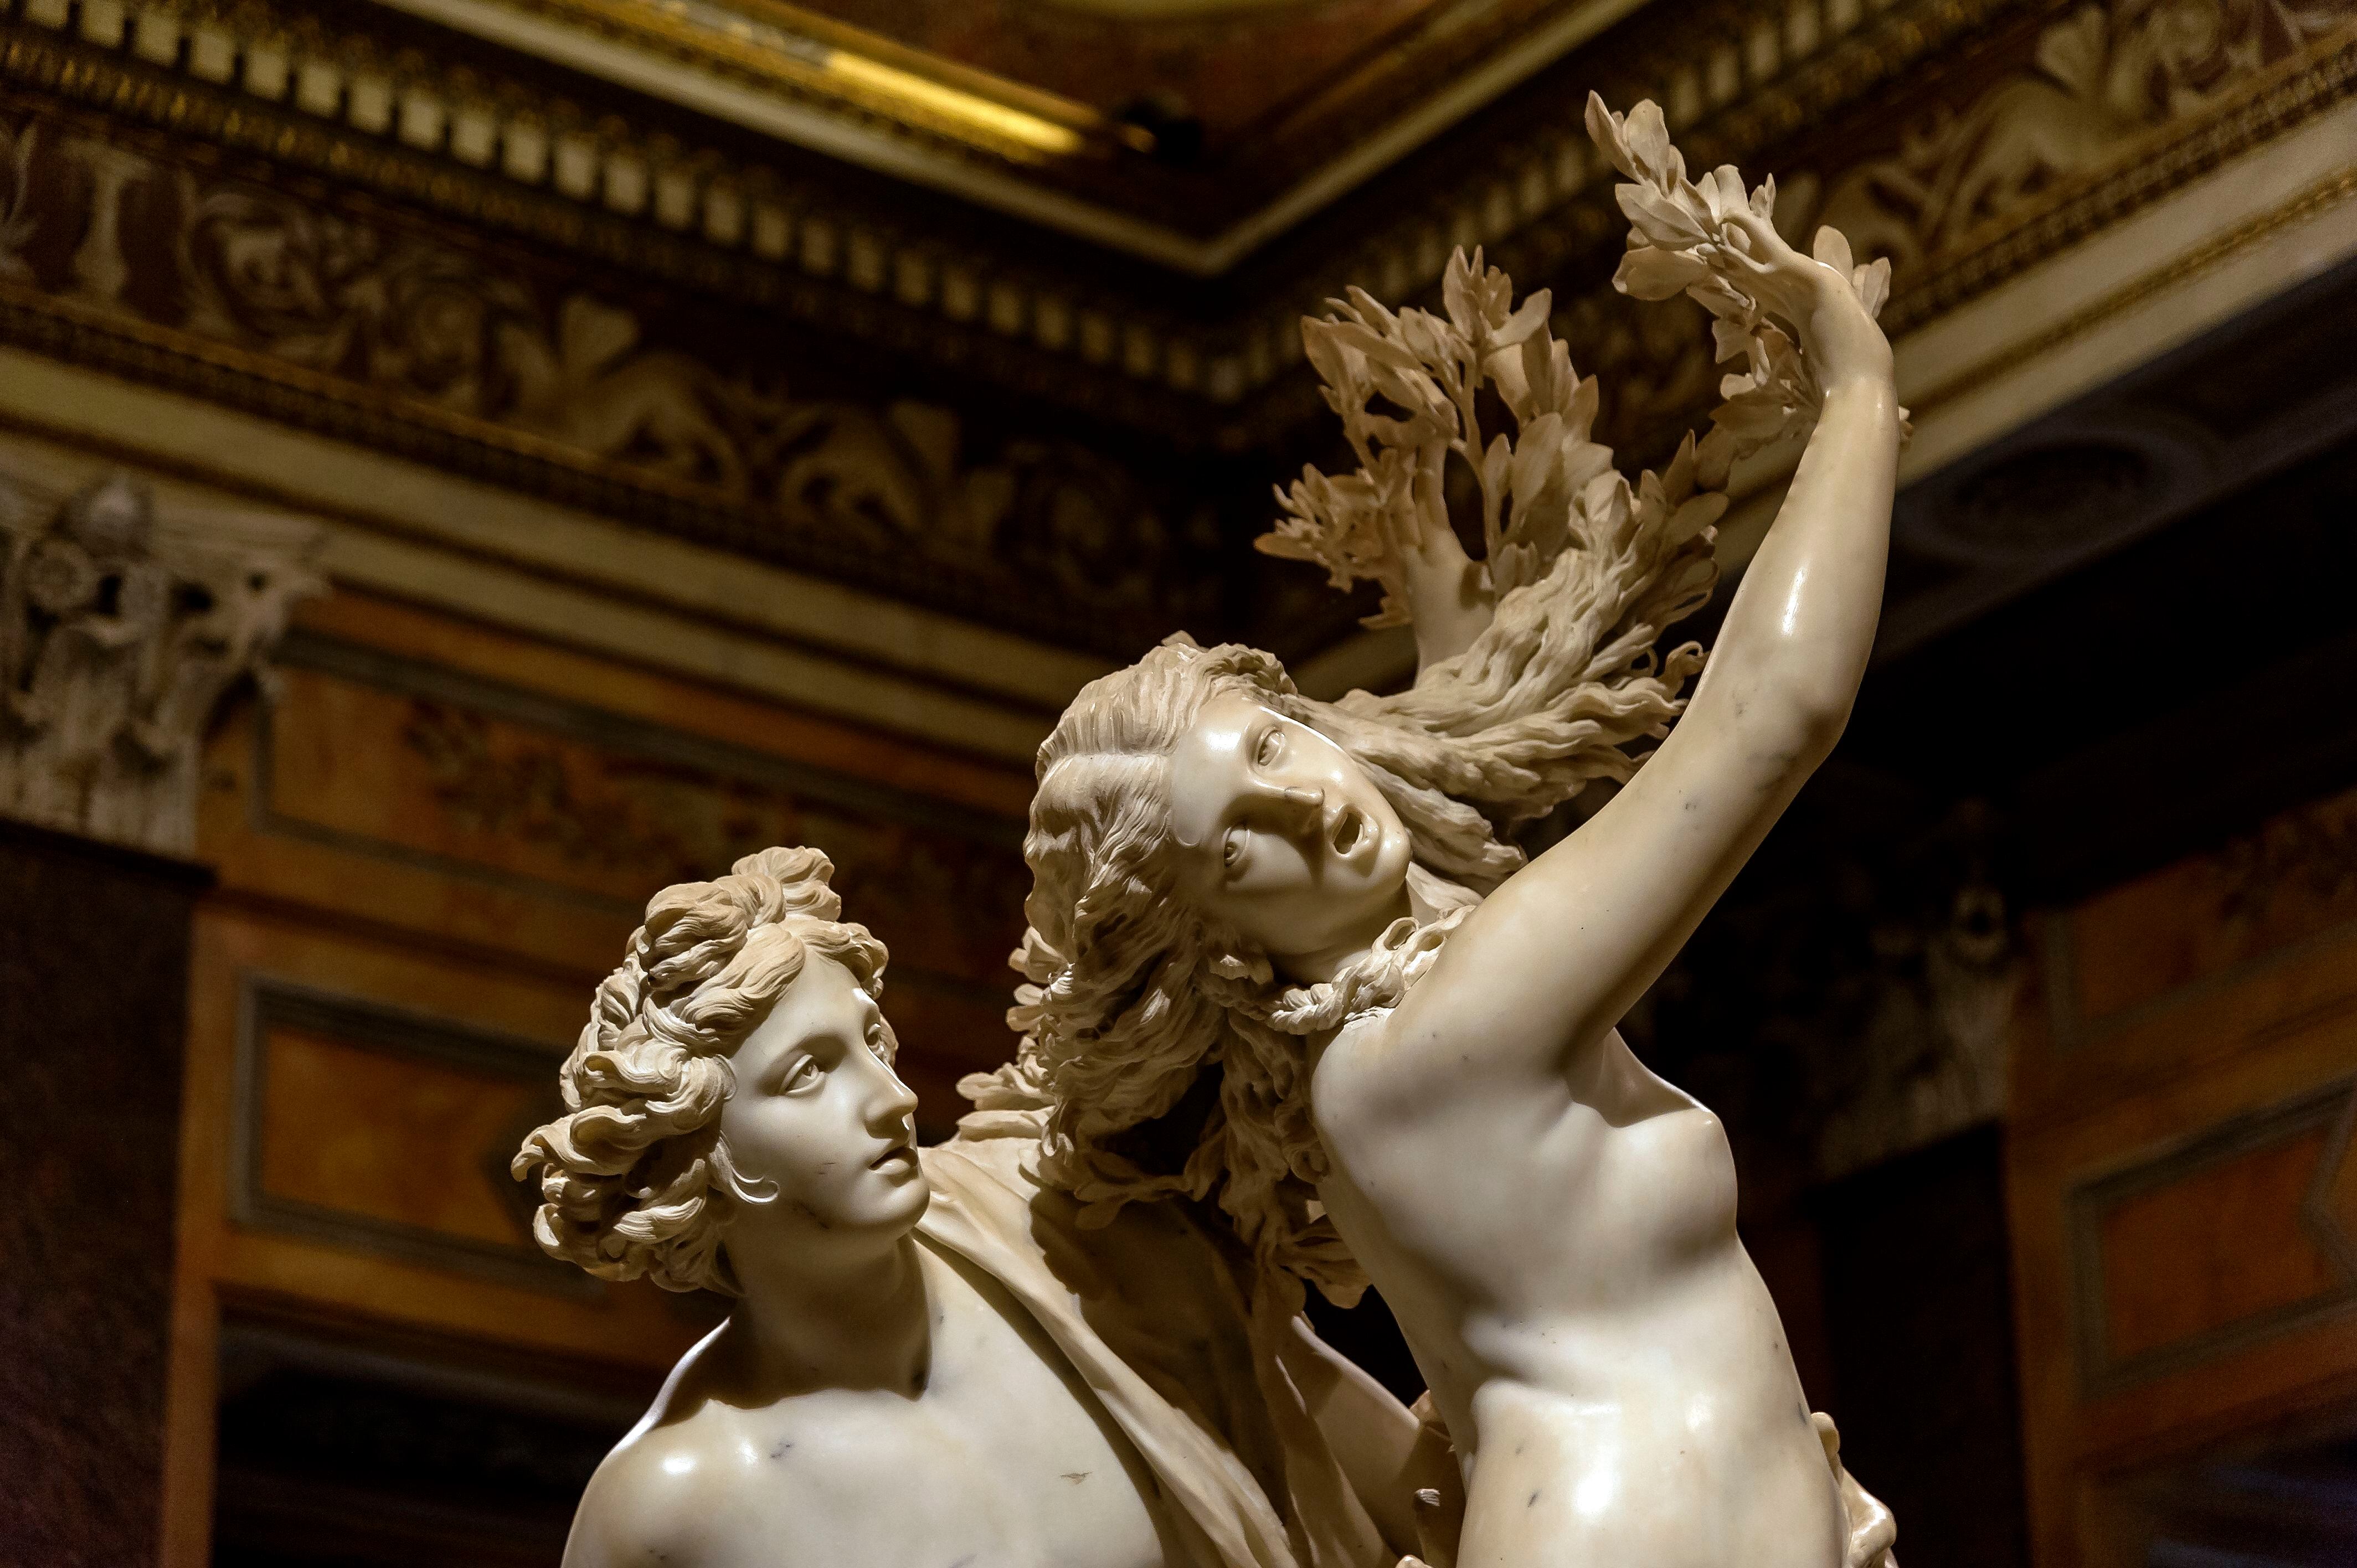 La escultura de Bernini en la Galería Borghese de Roma, que muestra el preciso momento en el que Dafne se transforma en un laurel.